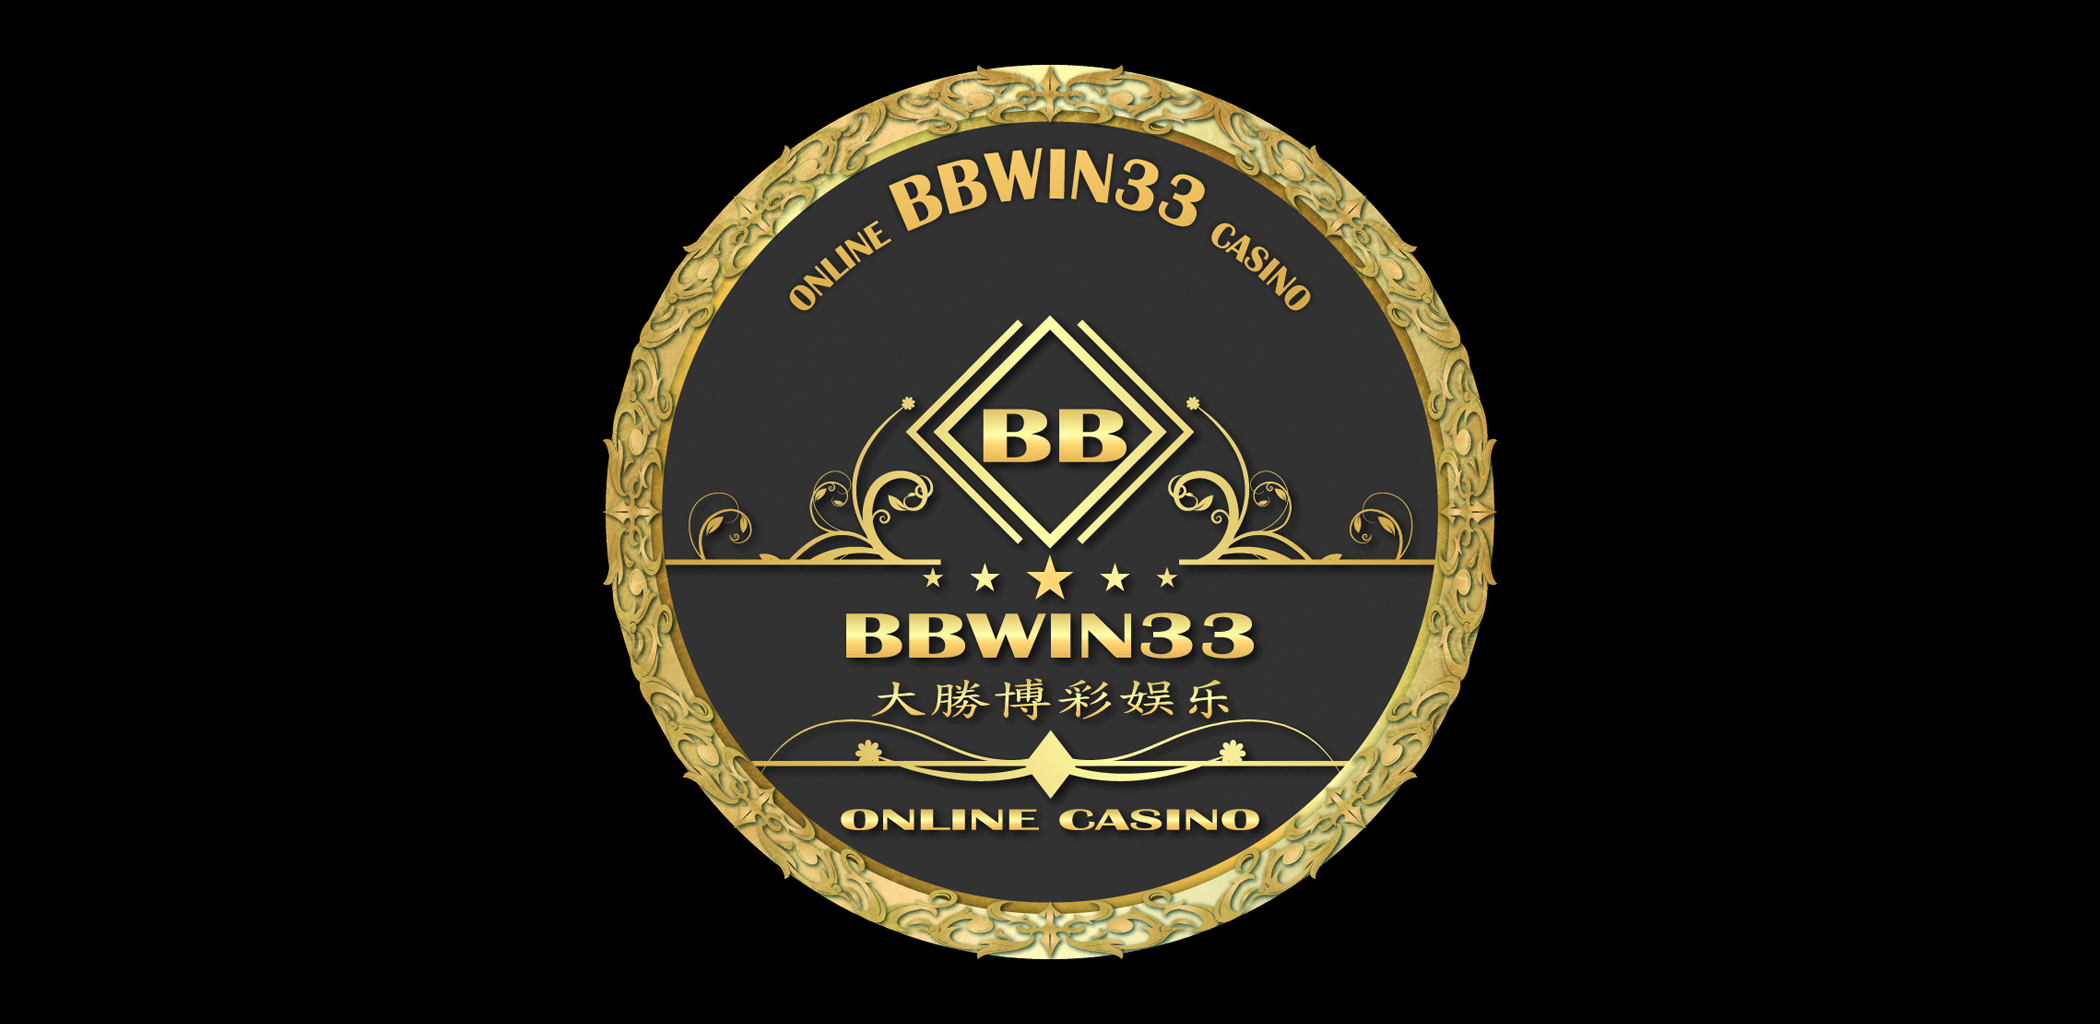 bbwin online casino logo - bbwin33 review - Gamblingonline.asia online casino Malaysia review